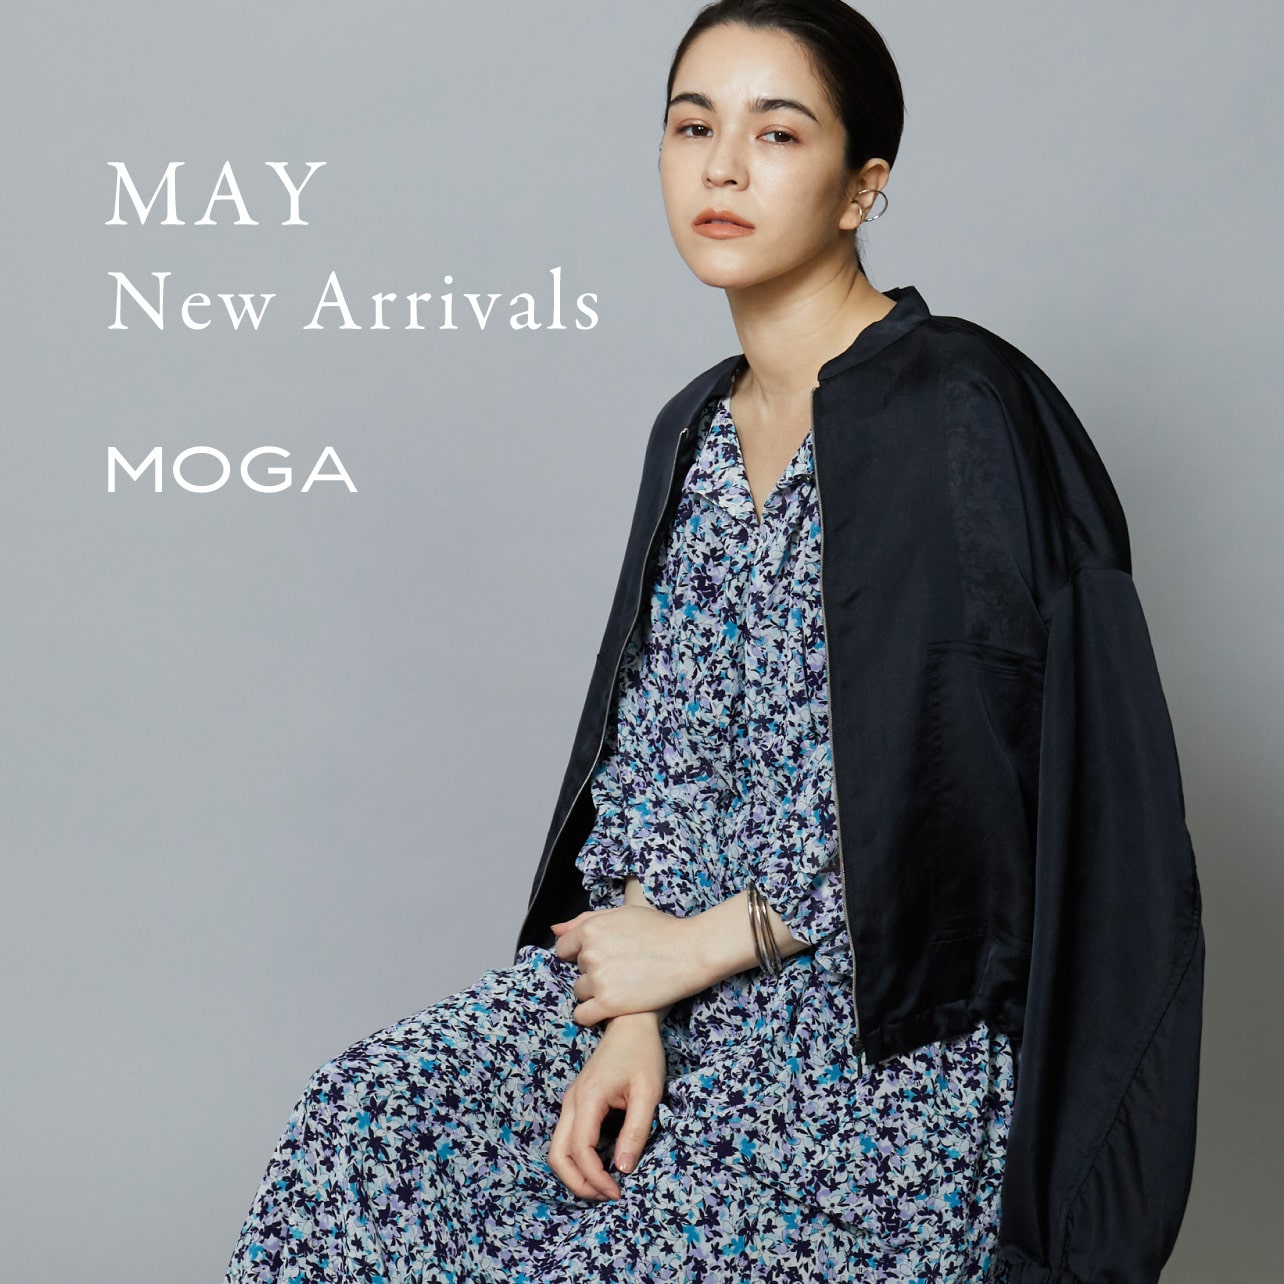 MOGA 23 May New Arrivals